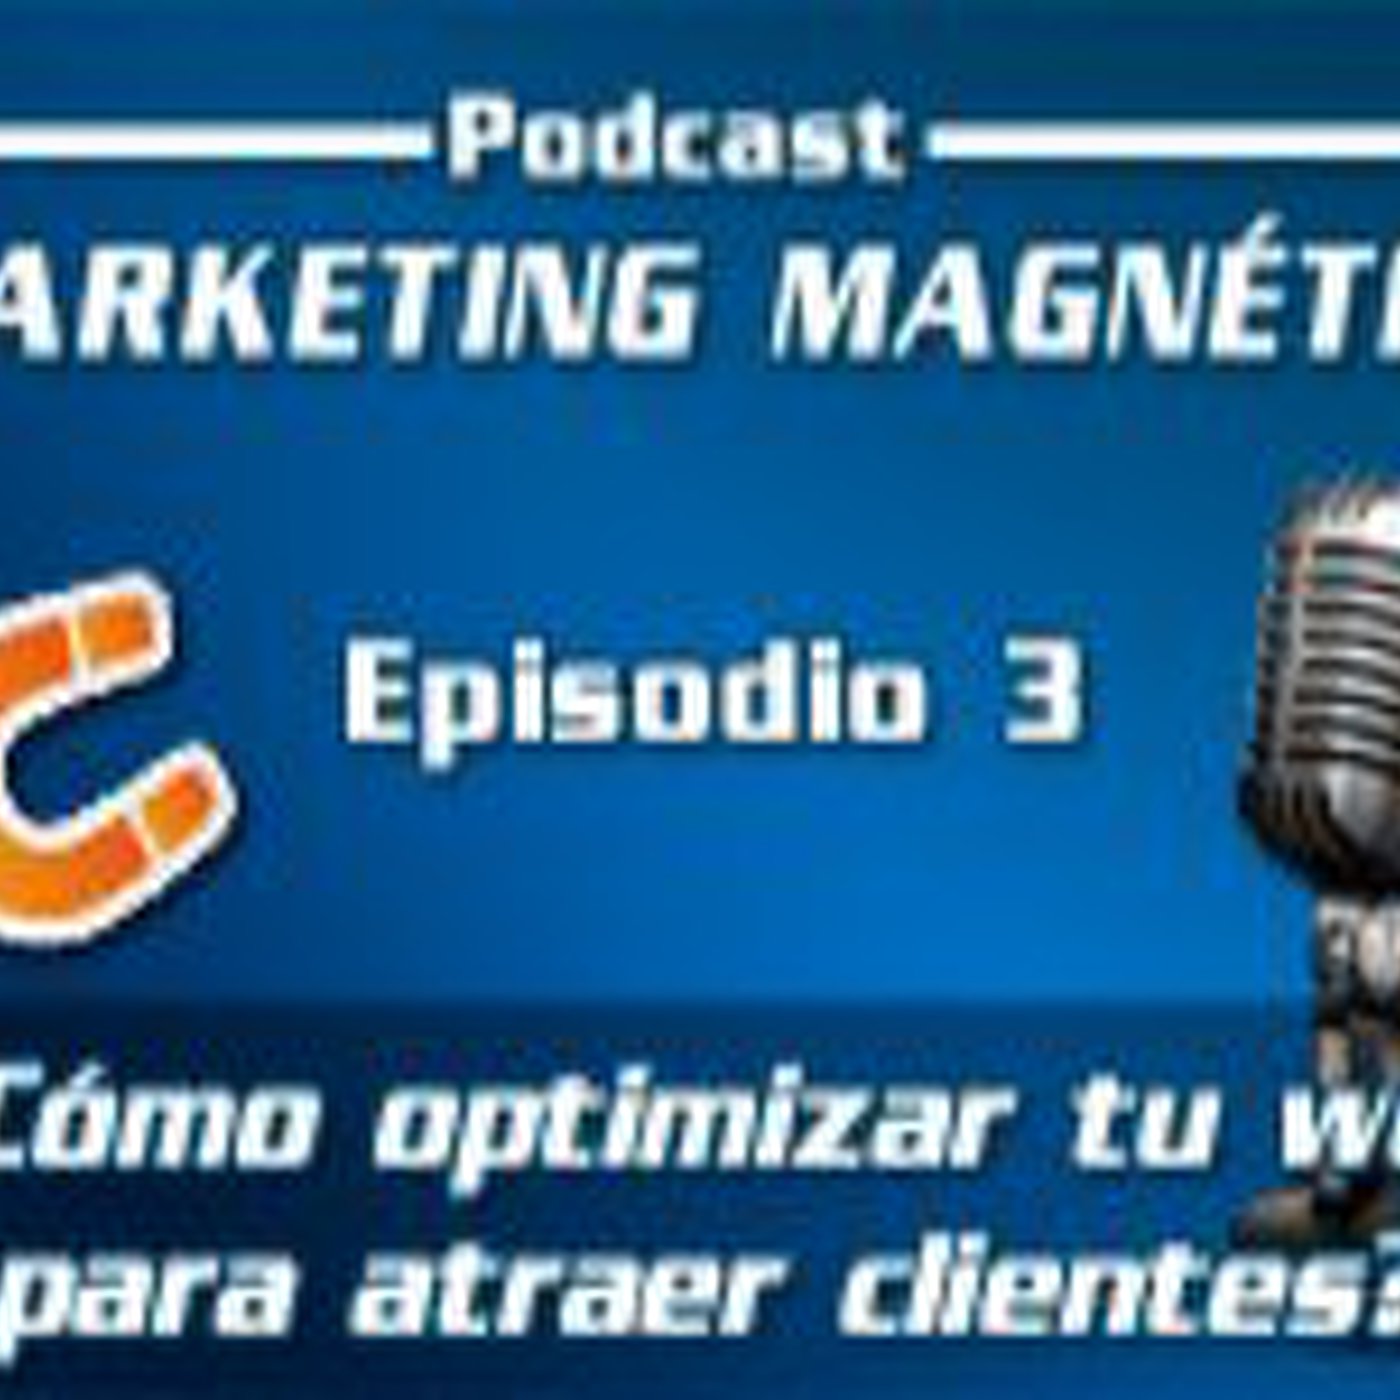 Marketing Magnético - Episodio 3 - ¿Cómo optimizar tu web para atraer más clientes potenciales?